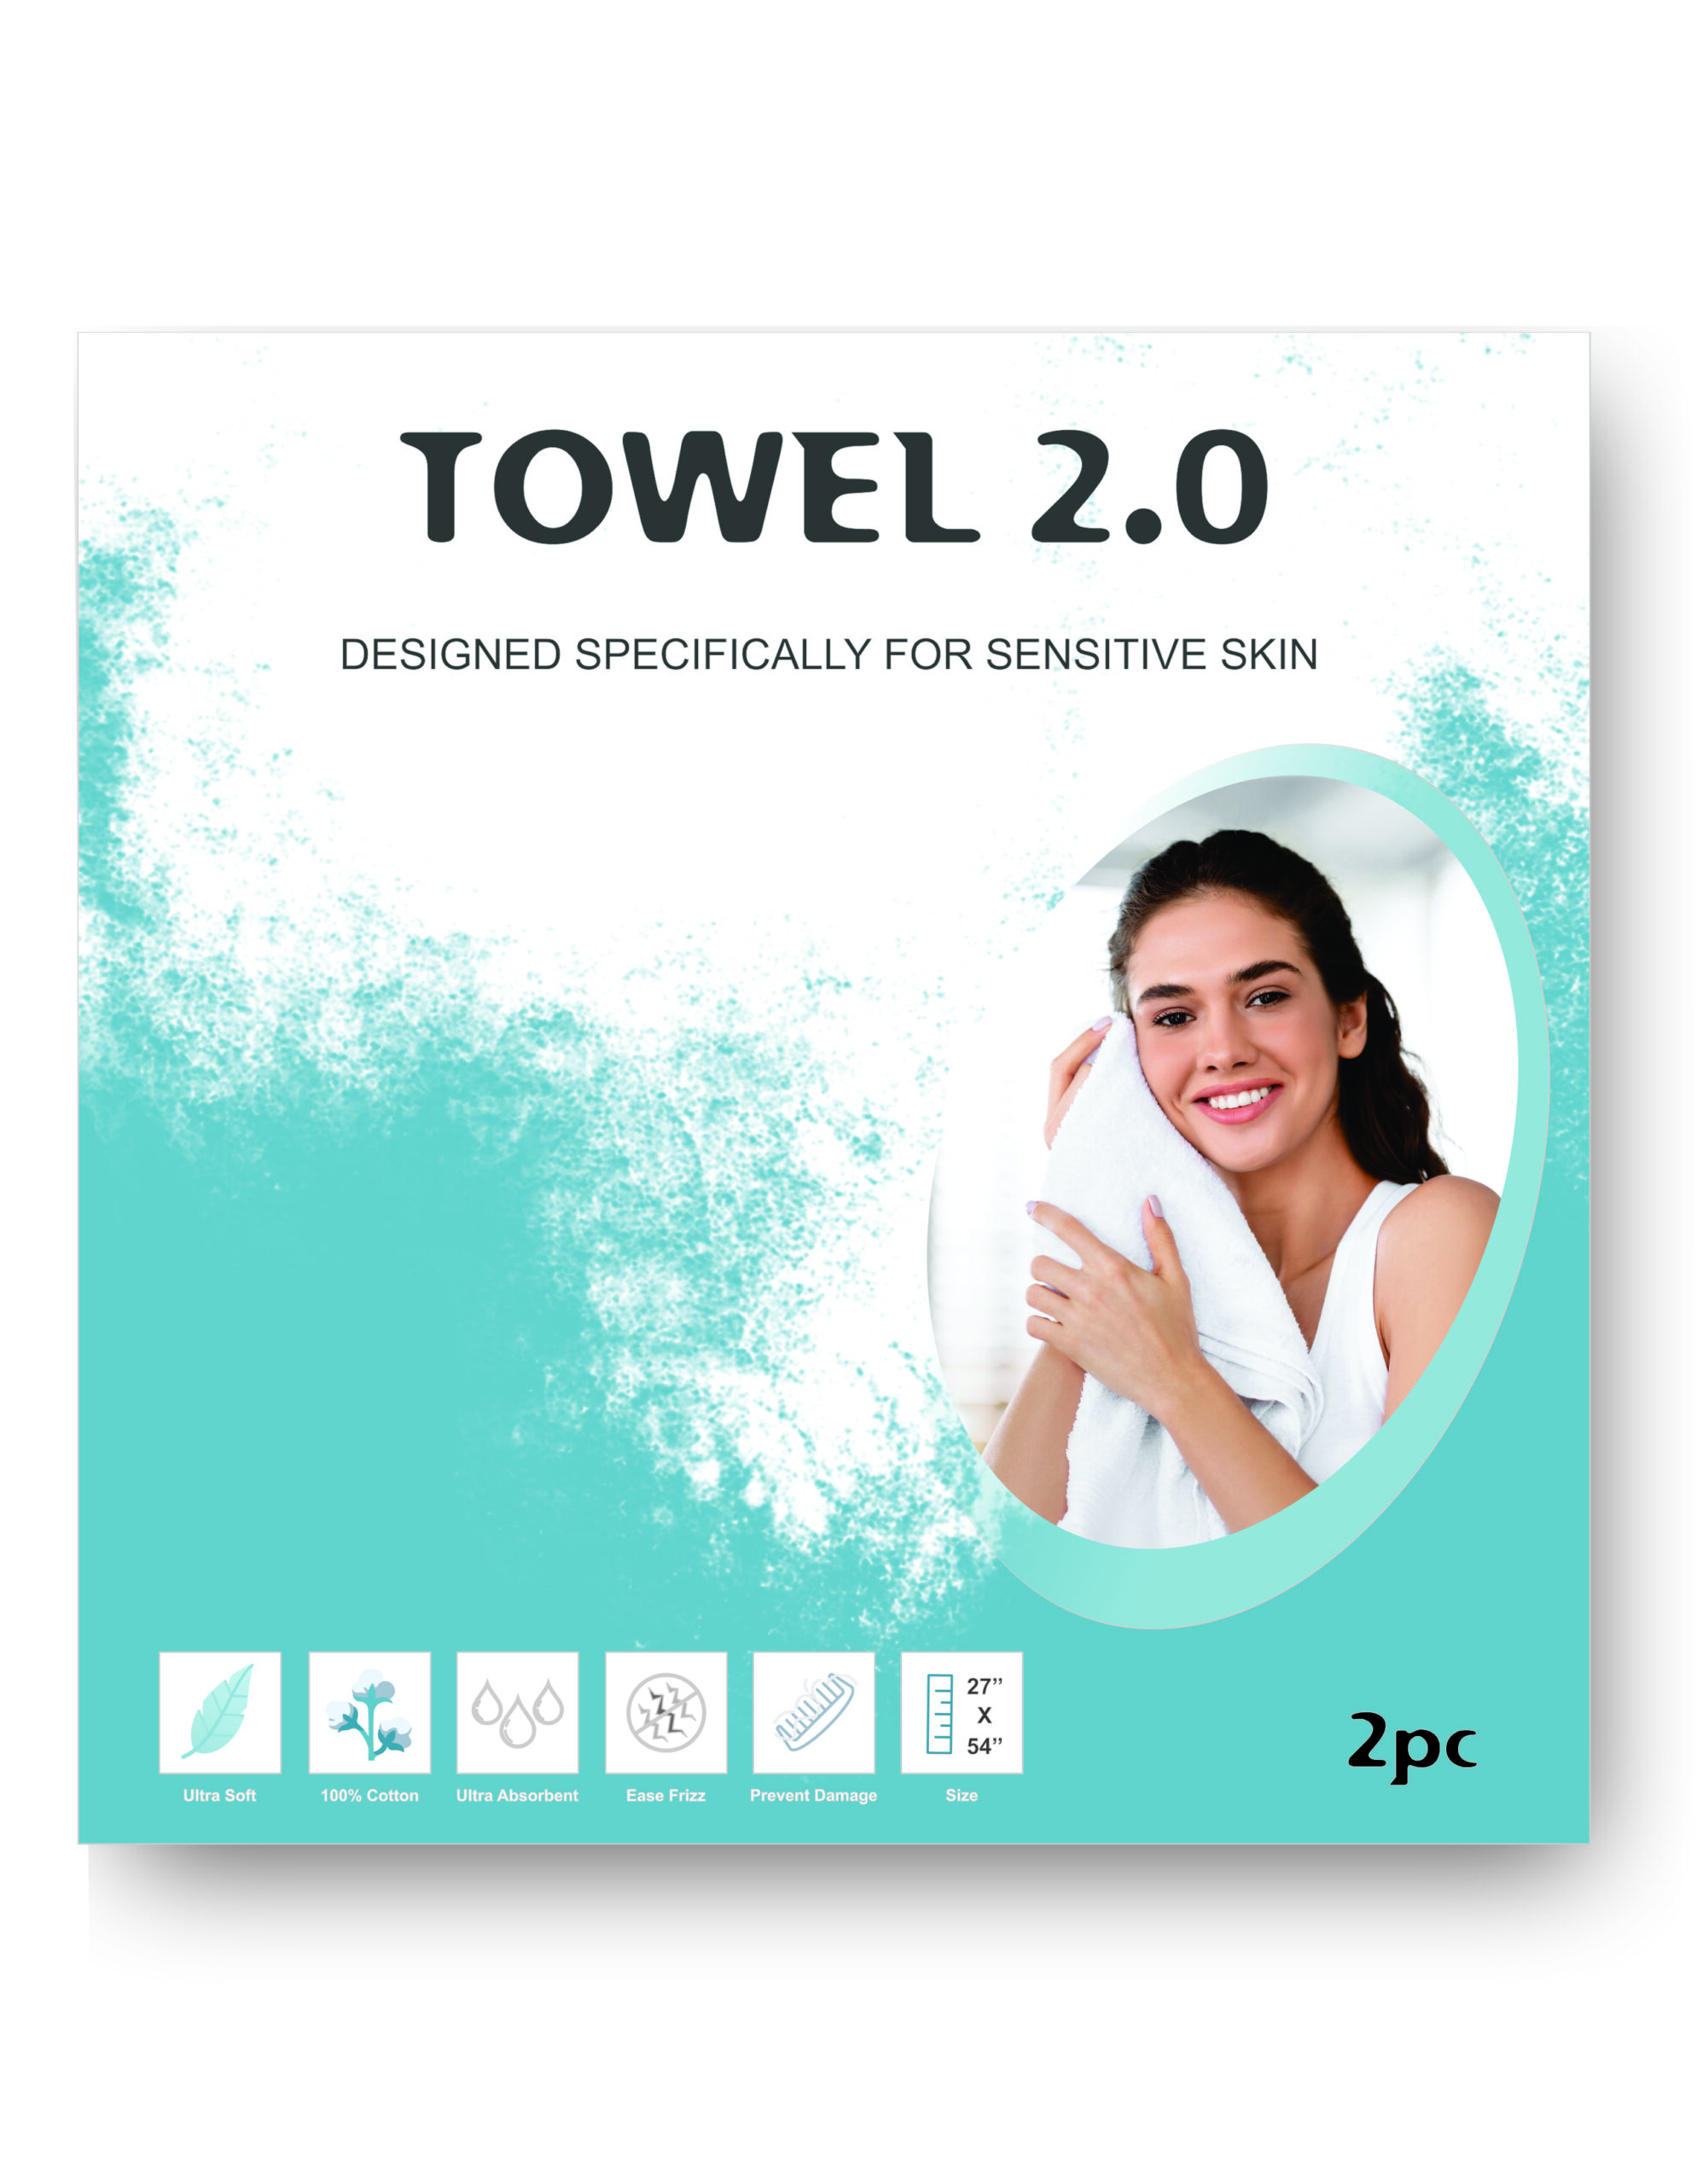 Towel 2.0 Package